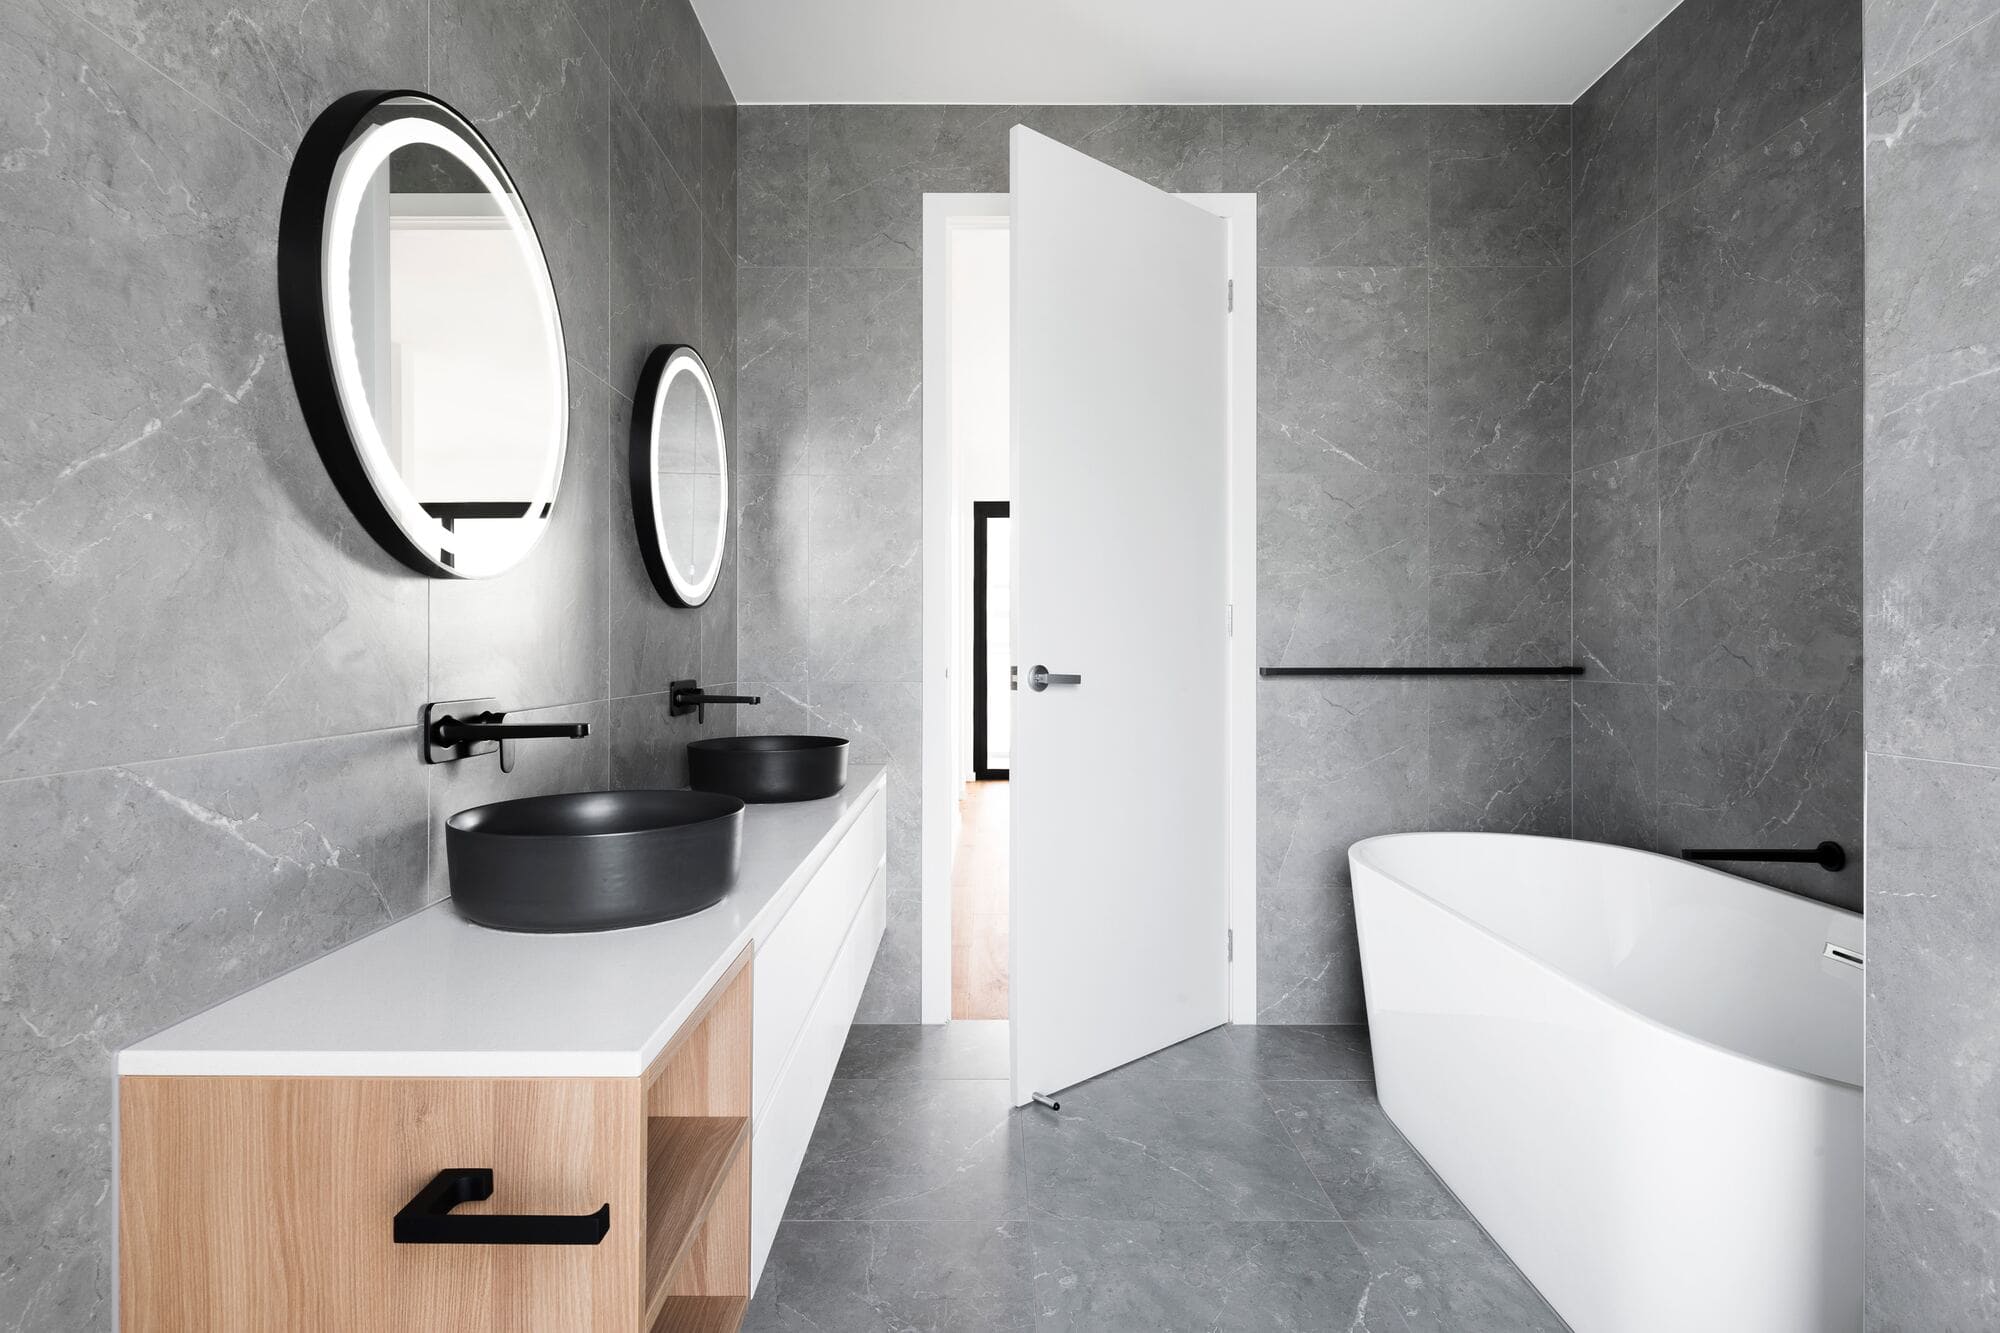 Realizzare un bagno dallo stile moderno e contemporaneo con i giusti rivestimenti e mobili bagno